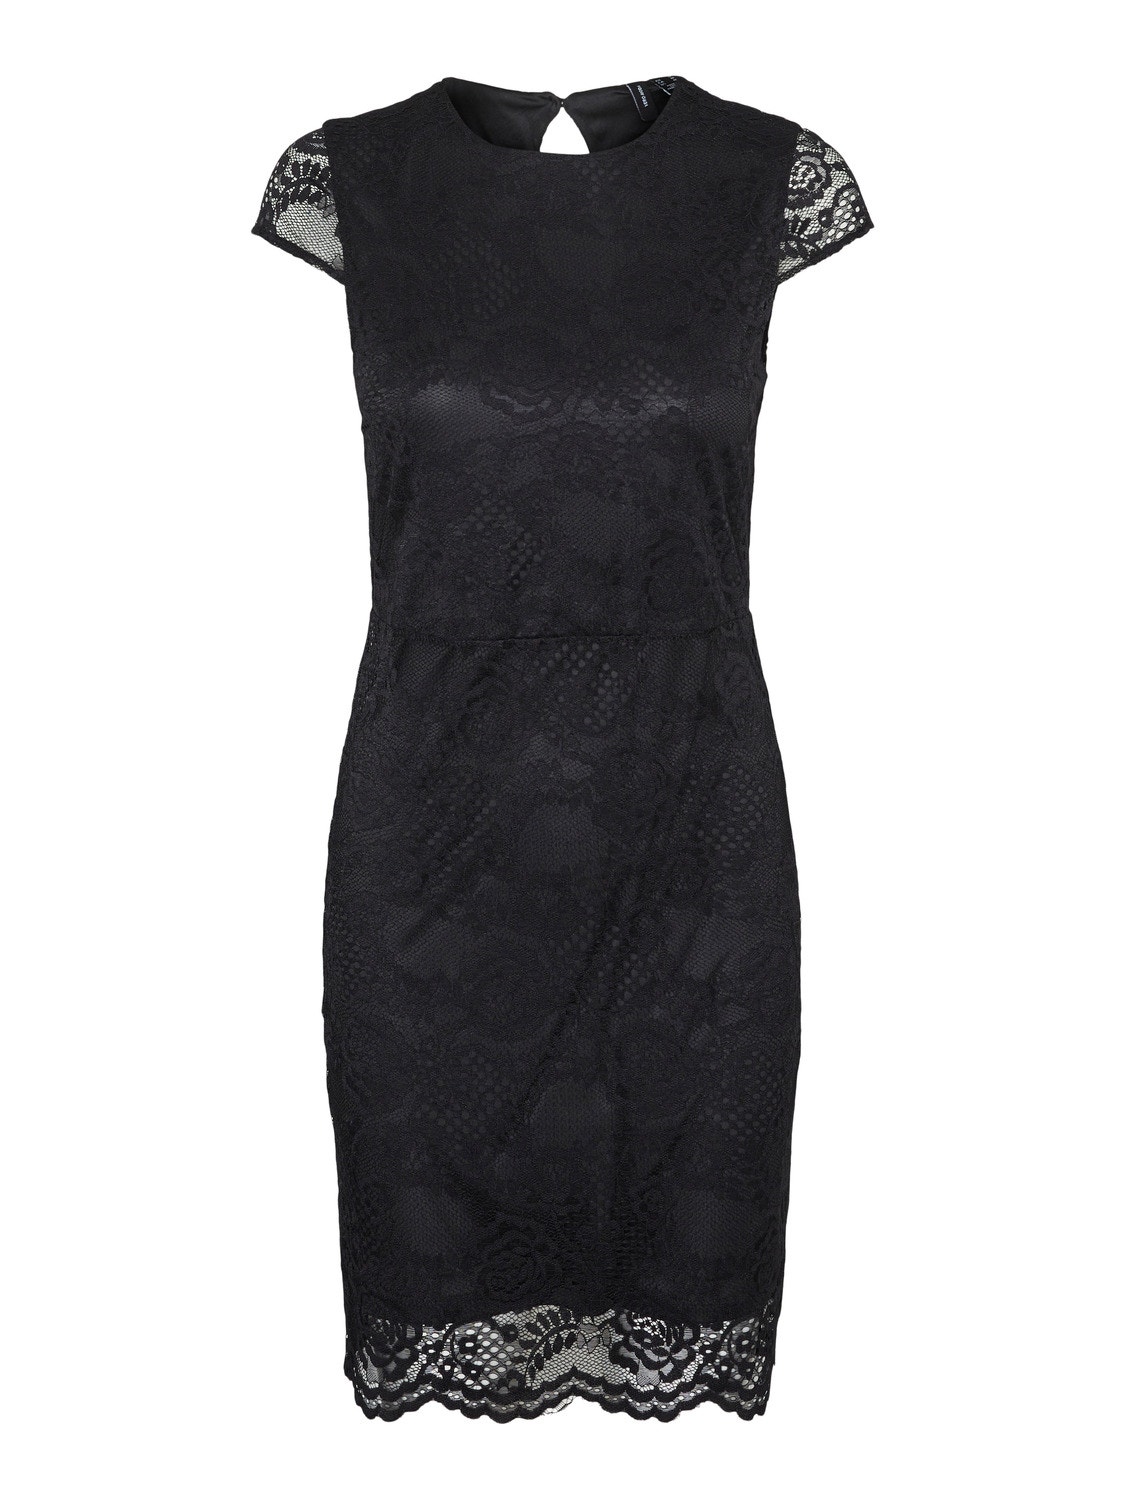 Vero Moda VMSARA Short dress -Black - 10296123